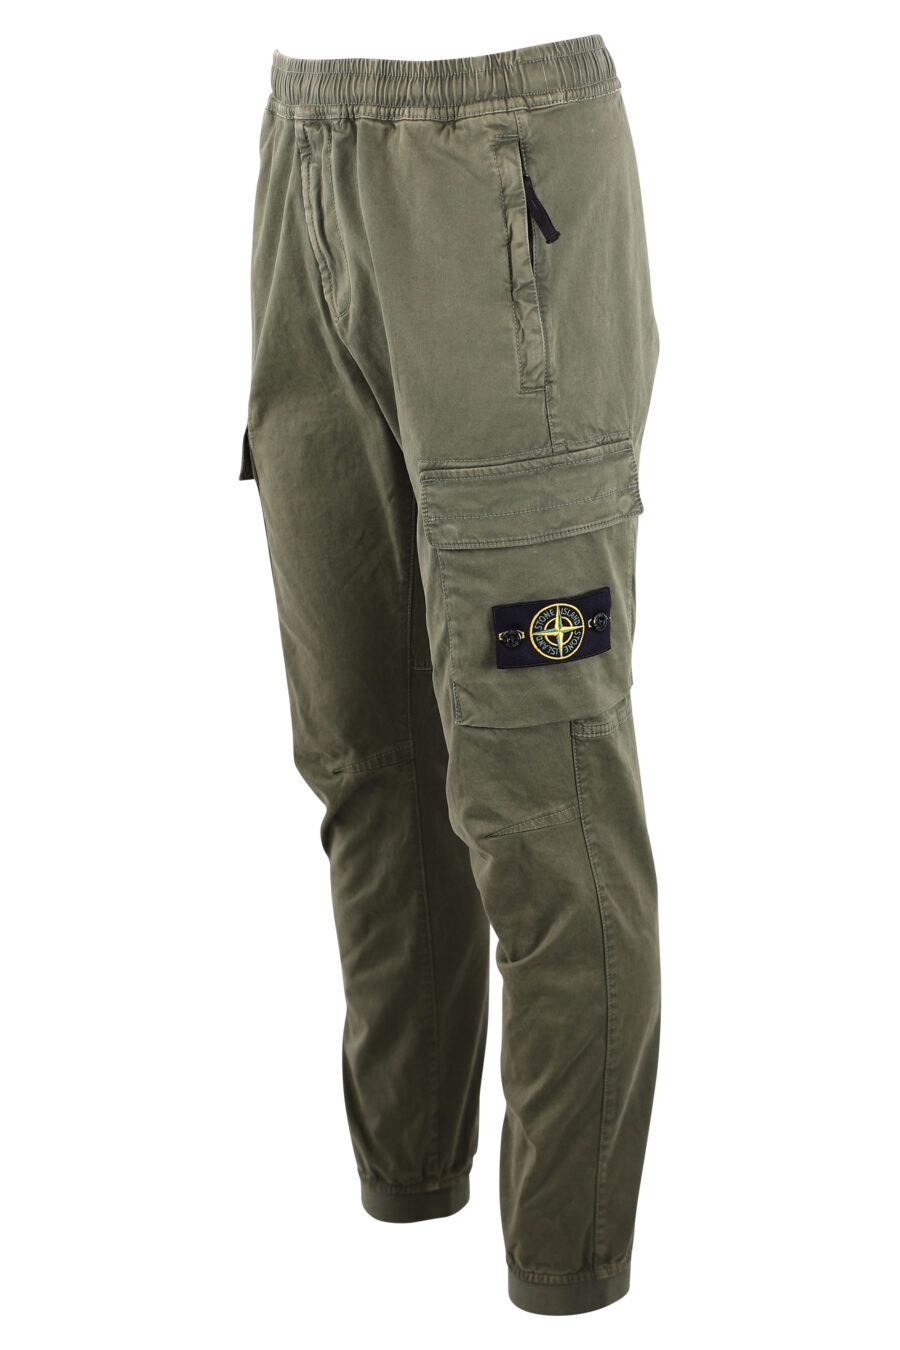 Pantalón verde militar estilo cargo con parche lateral - IMG 3198